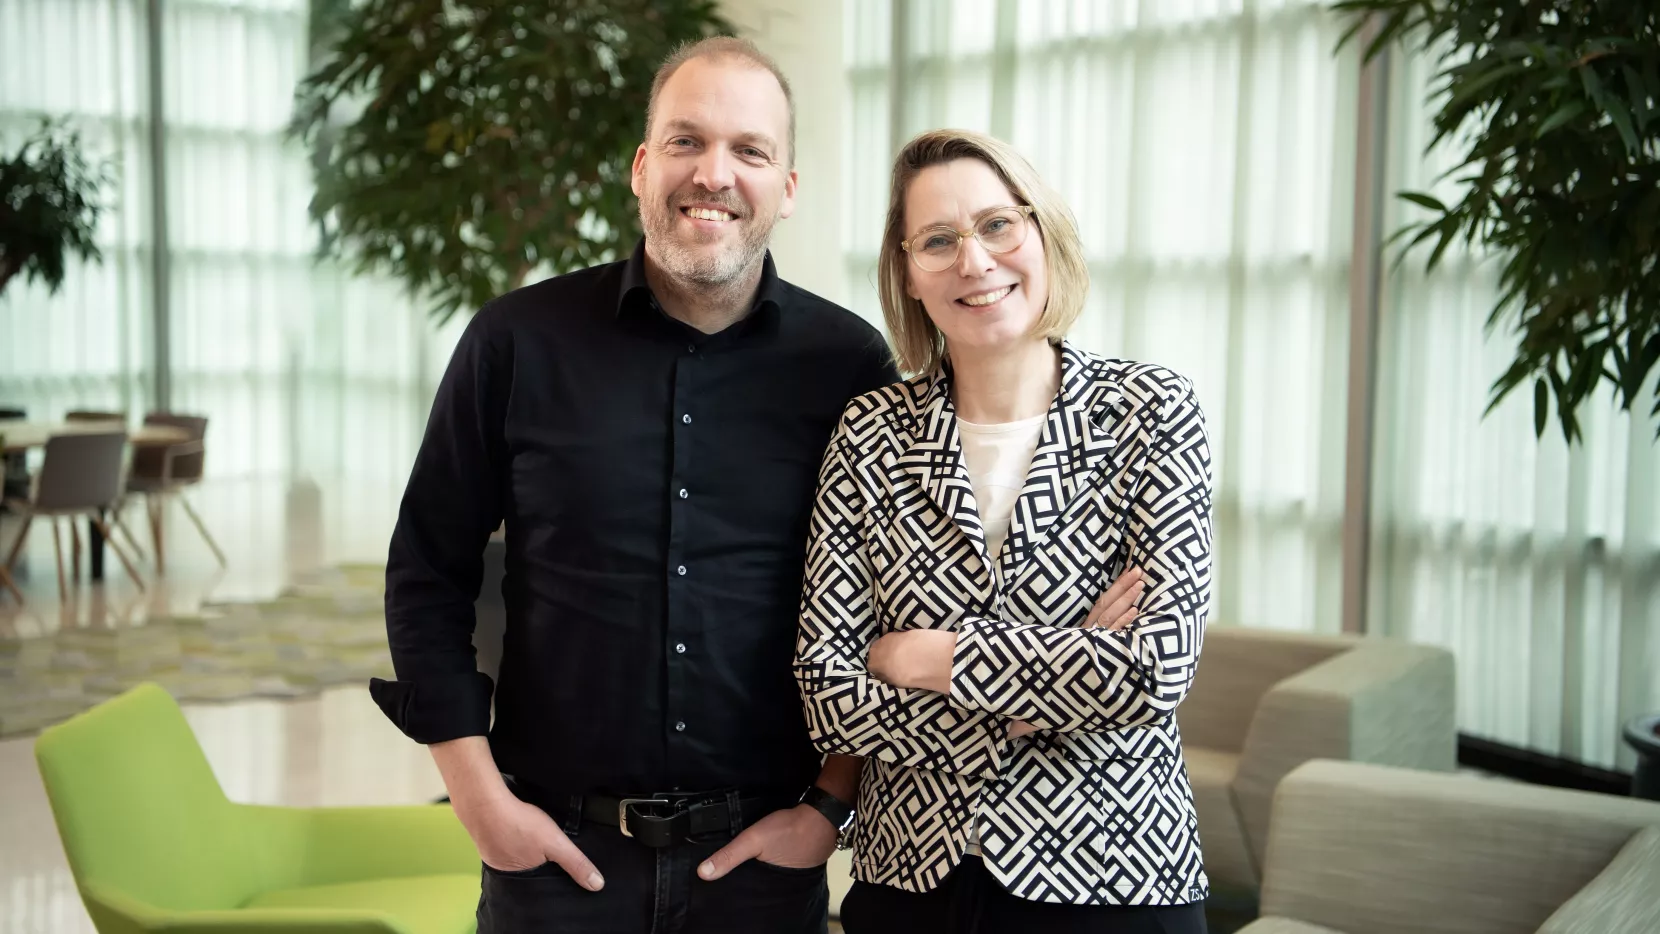 Dubbelportret Willem-Jan van der Klok en Lisette Frelink, adviseurs werkgeversdiensten bij UWV.